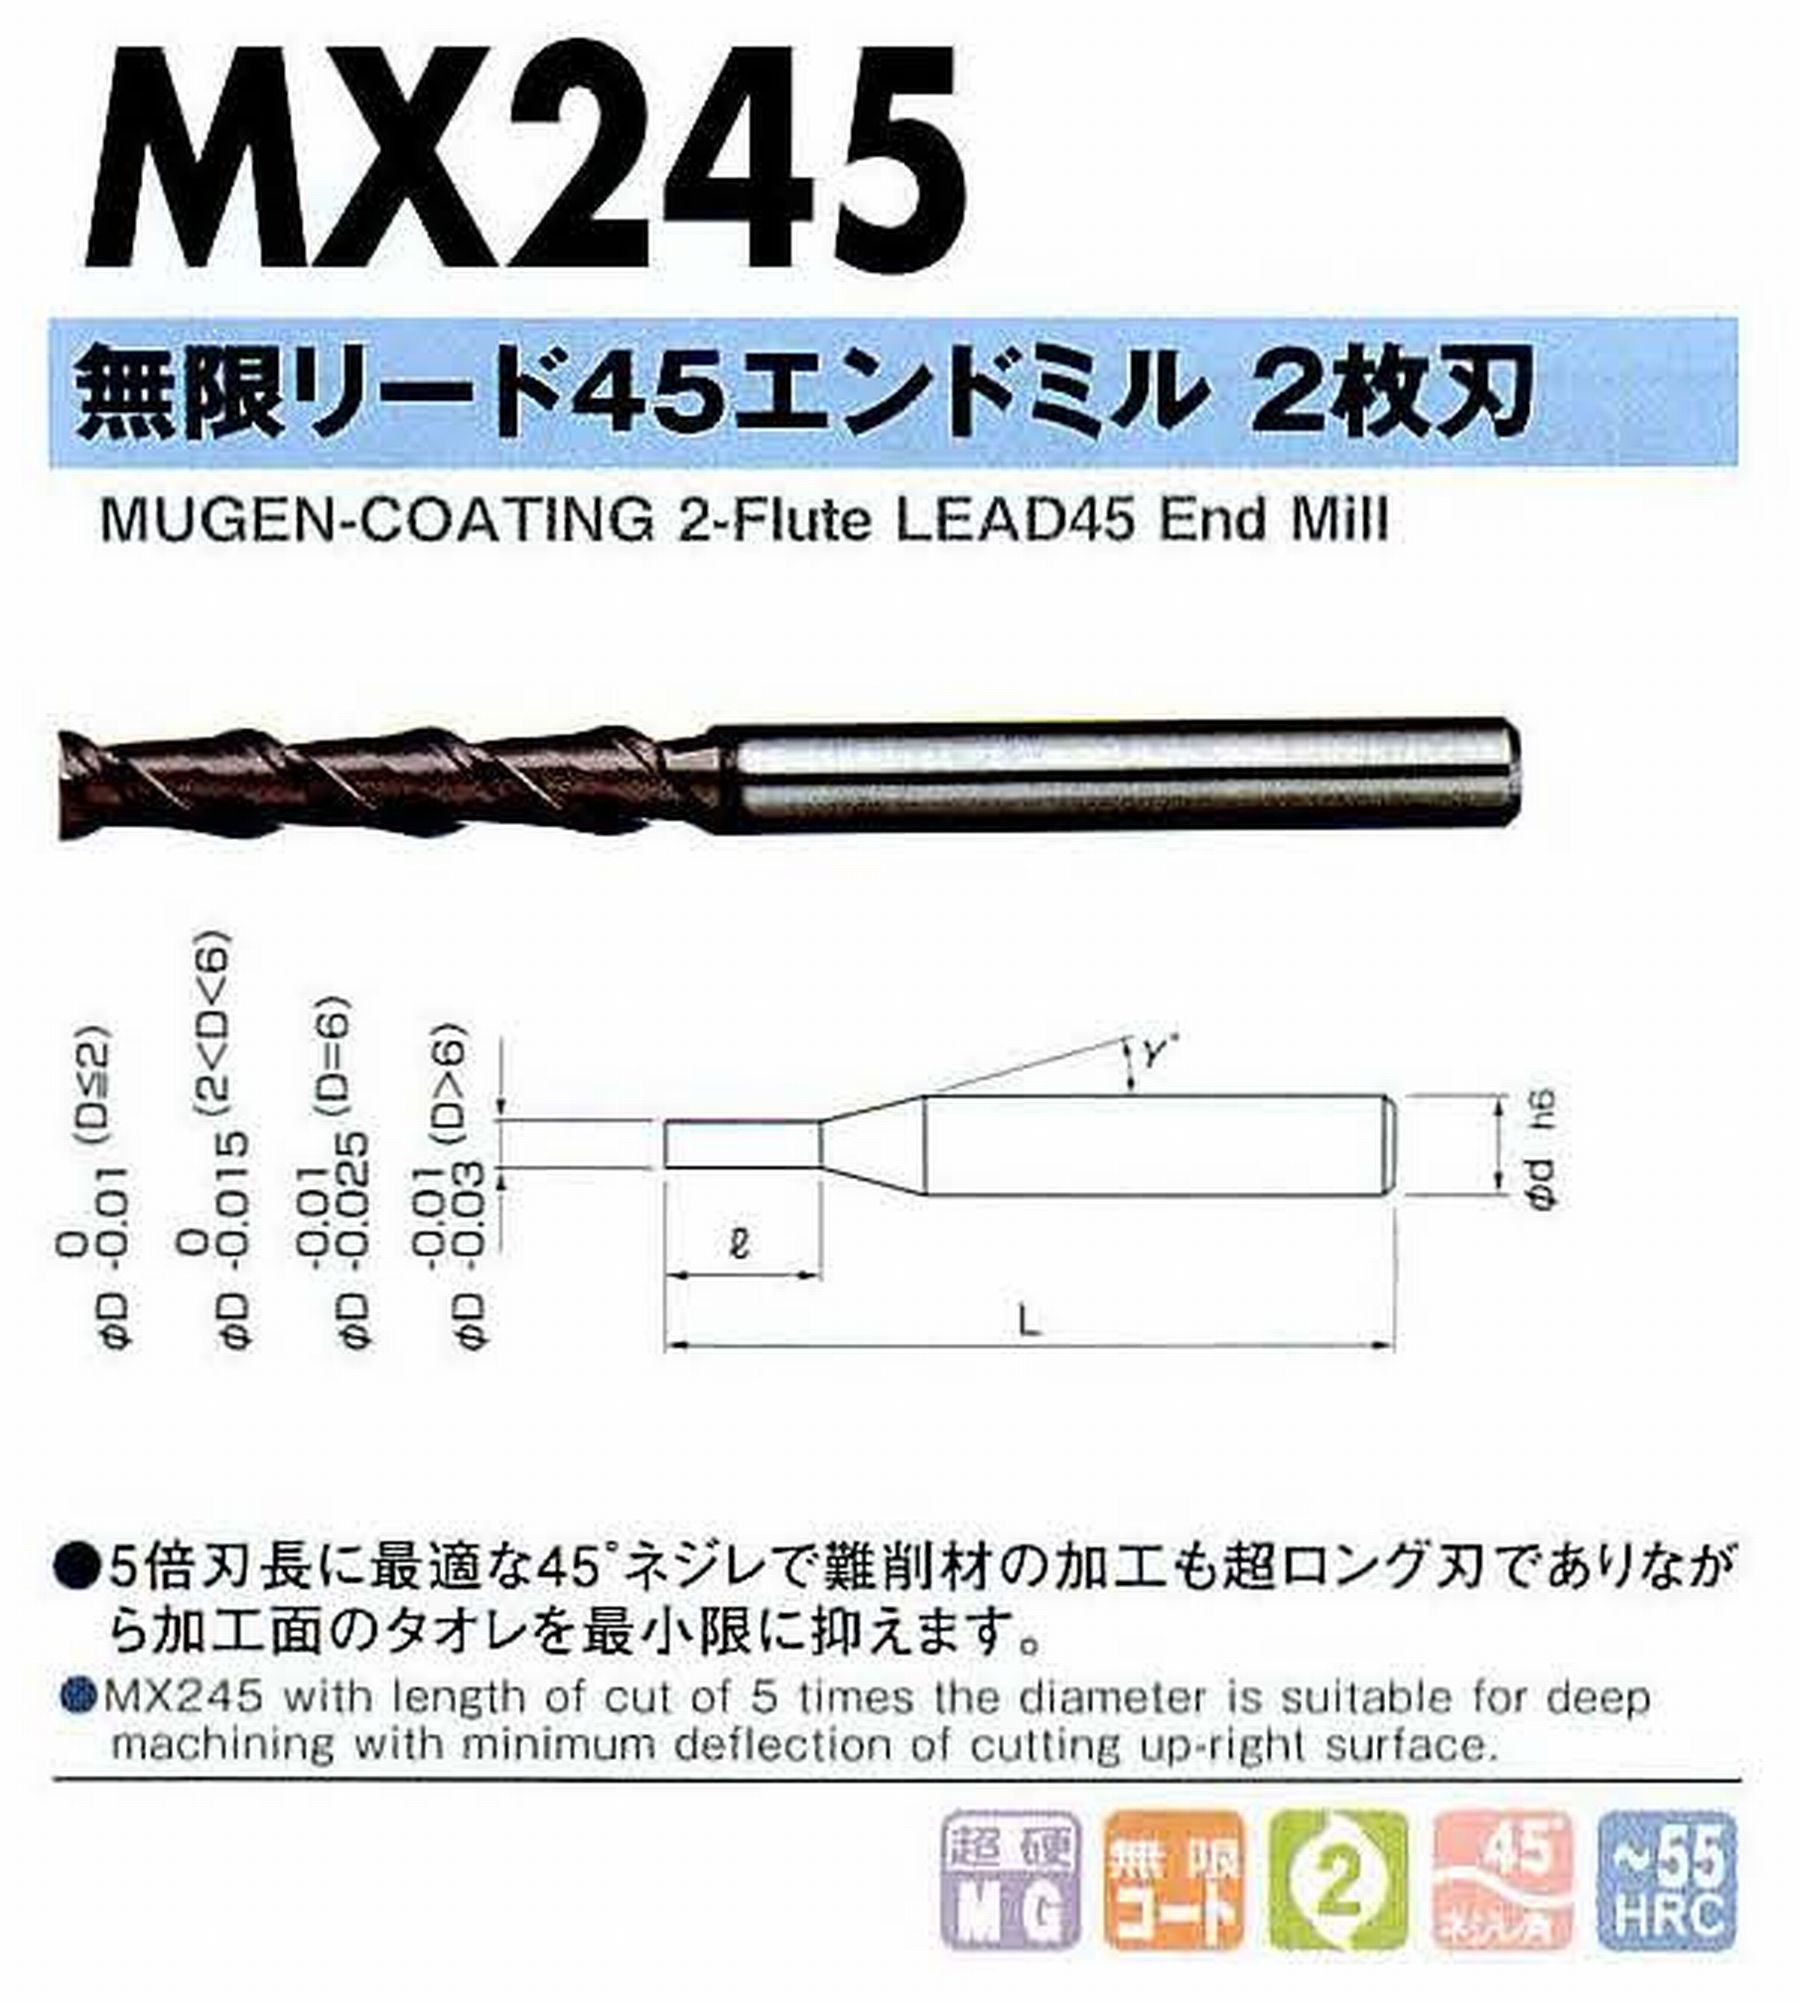 NS 日進工具 MX245 無限リード45エンドミル2枚刃 コードNO．08-00045-00080 刃径0.8 刃長4 首角12° シャンク径4mm 全長45